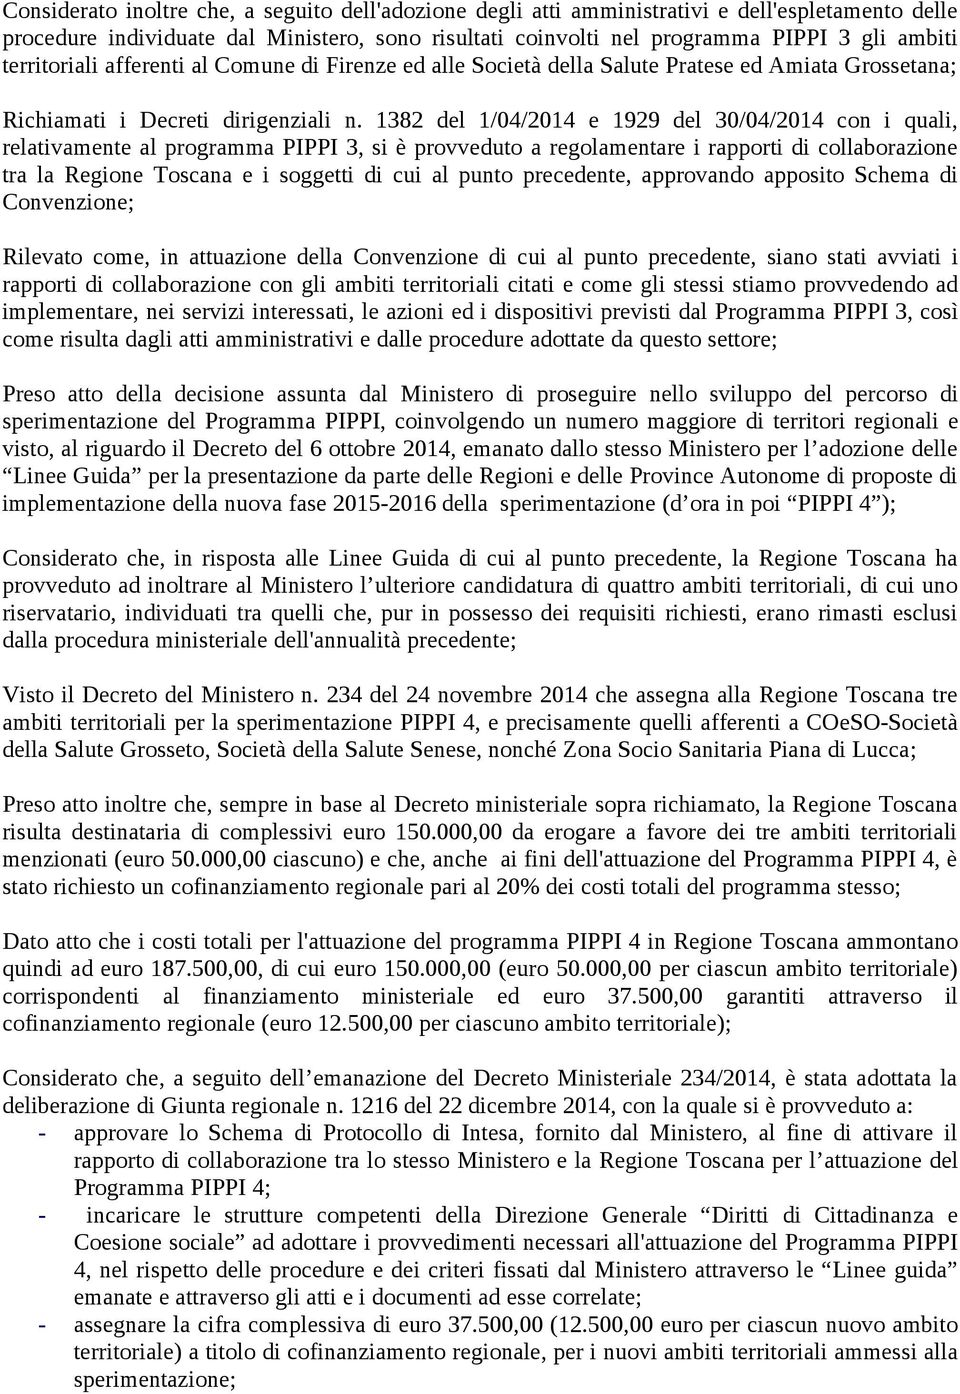 1382 del 1/04/2014 e 1929 del 30/04/2014 con i quali, relativamente al programma PIPPI 3, si è provveduto a regolamentare i rapporti di collaborazione tra la Regione Toscana e i soggetti di cui al